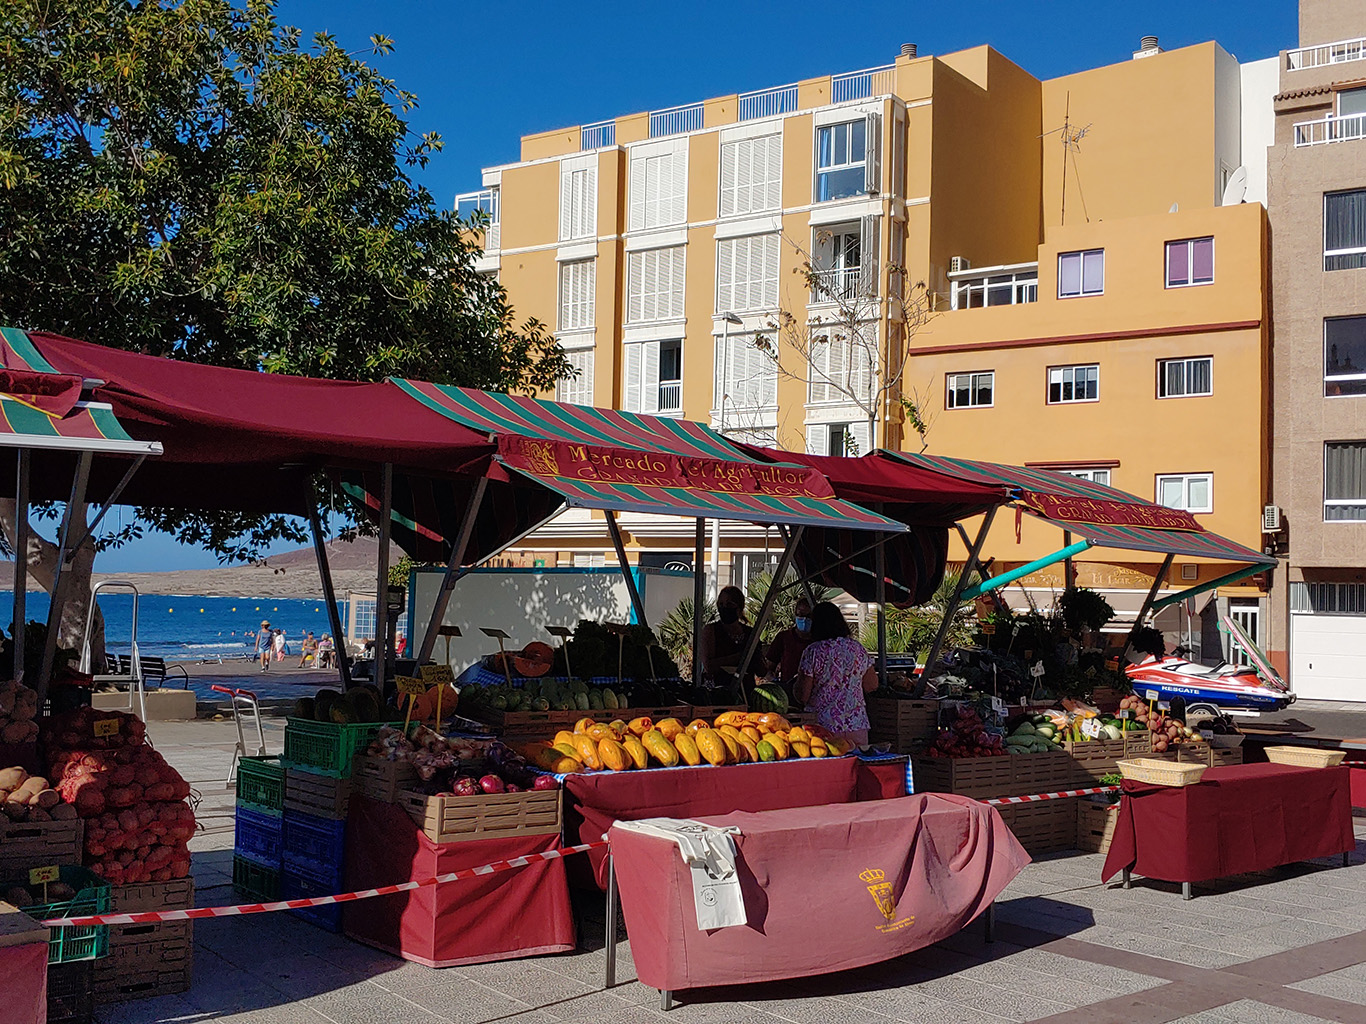 Farmářské trhy jsou na Tenerife velmi oblíbené místními obyvateli i turisty